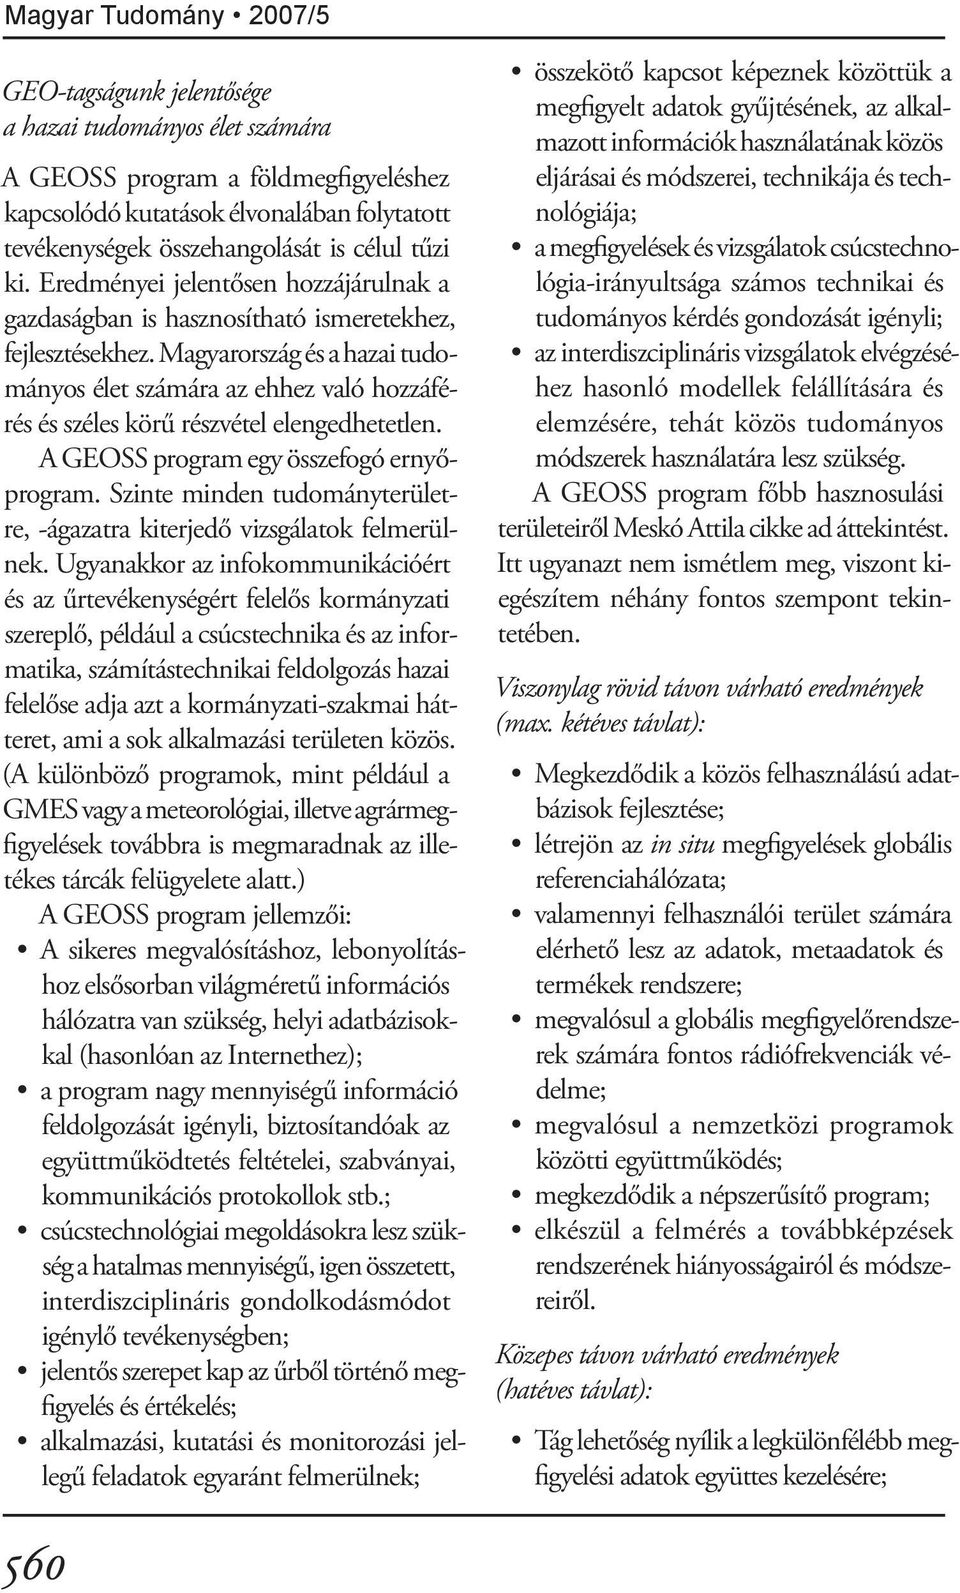 Magyarország és a hazai tudományos élet számára az ehhez való hozzáférés és széles körű részvétel elengedhetetlen. A GEOSS program egy összefogó ernyőprogram.